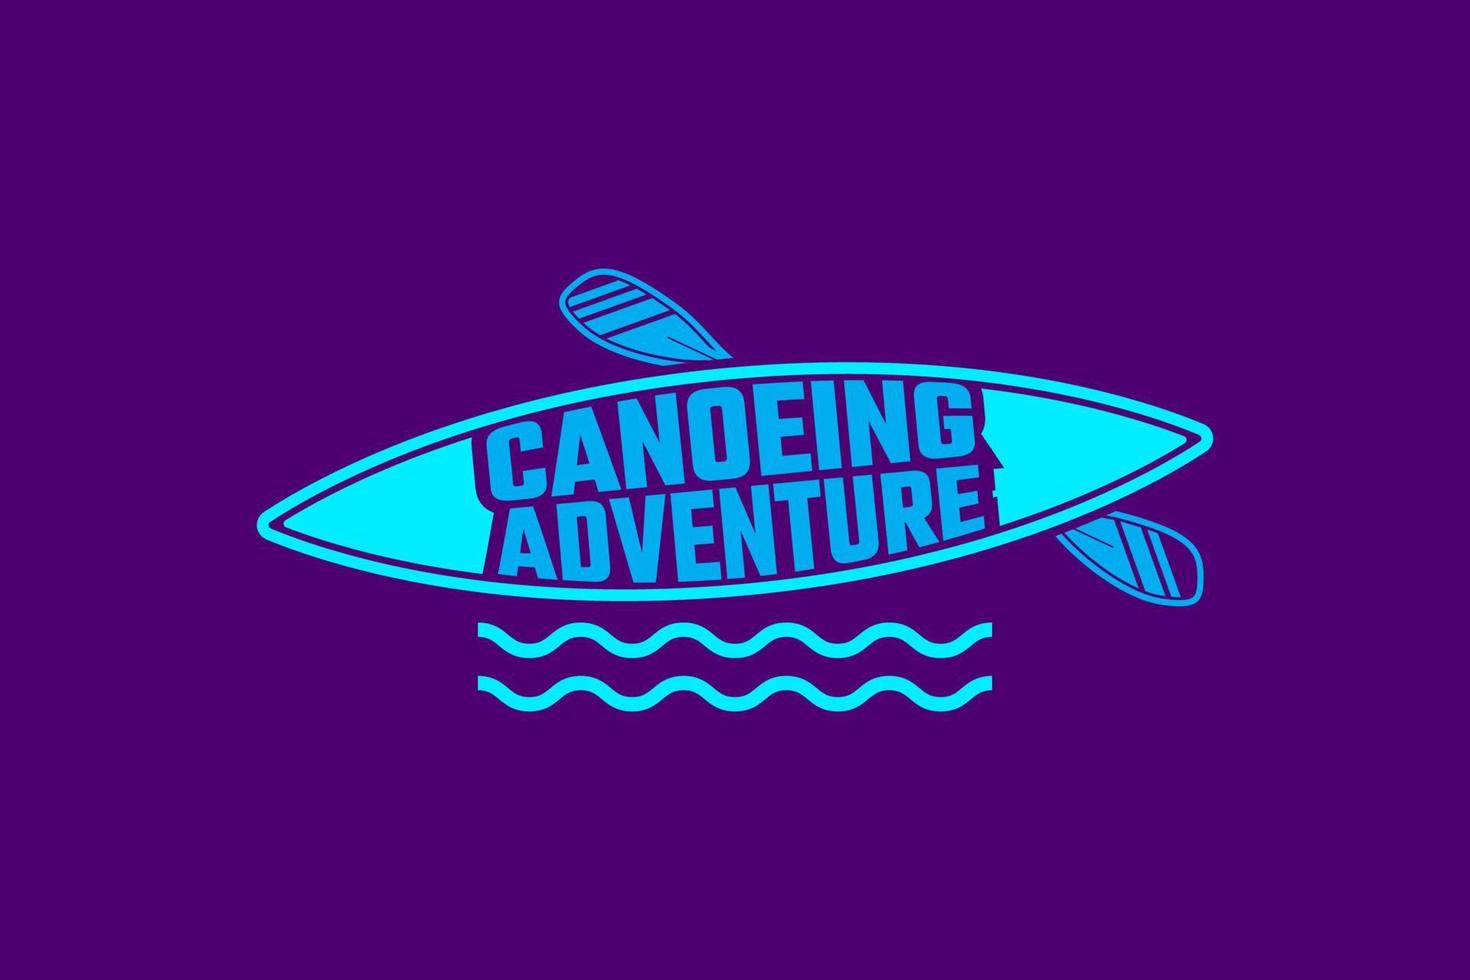 plantilla de logotipo de aventura en canoa adecuada para negocios, asociaciones, productos, etc. vector